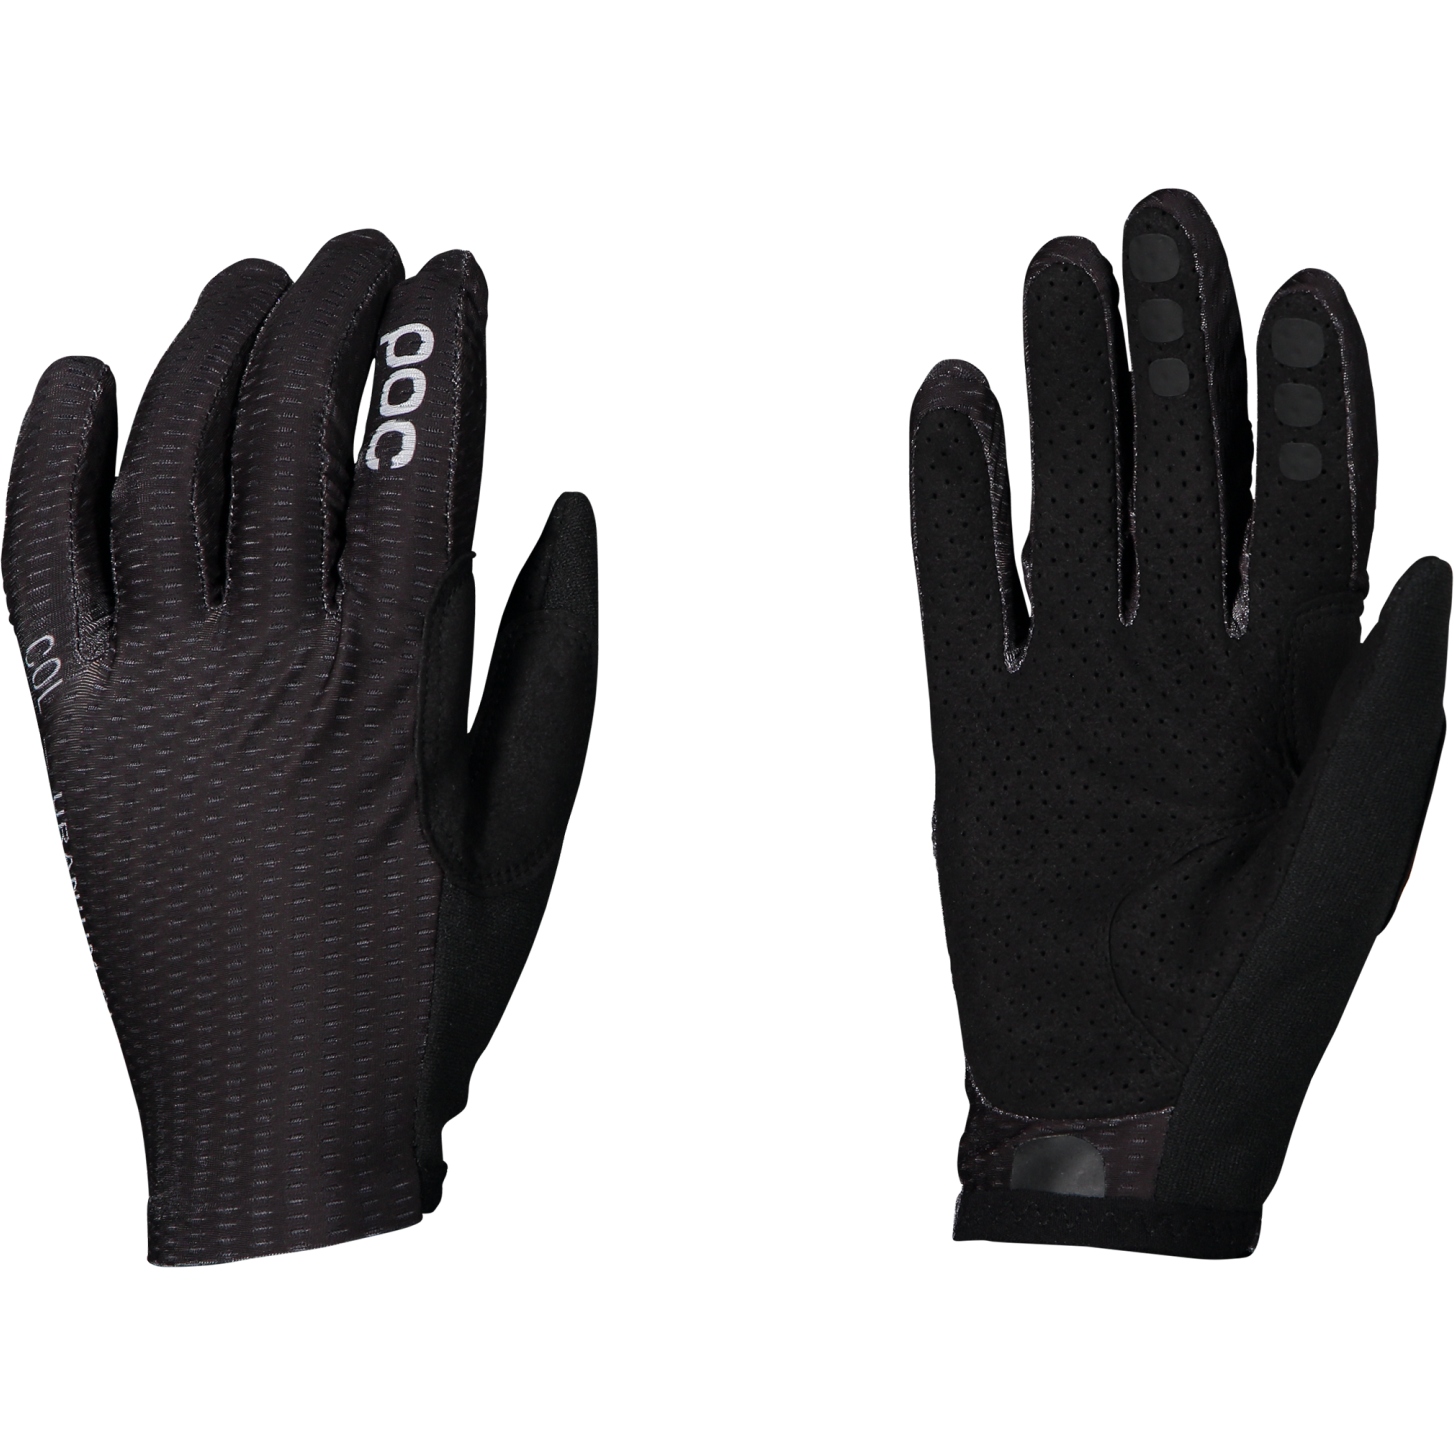 Image of POC Savant MTB Gloves - 1002 Uranium Black